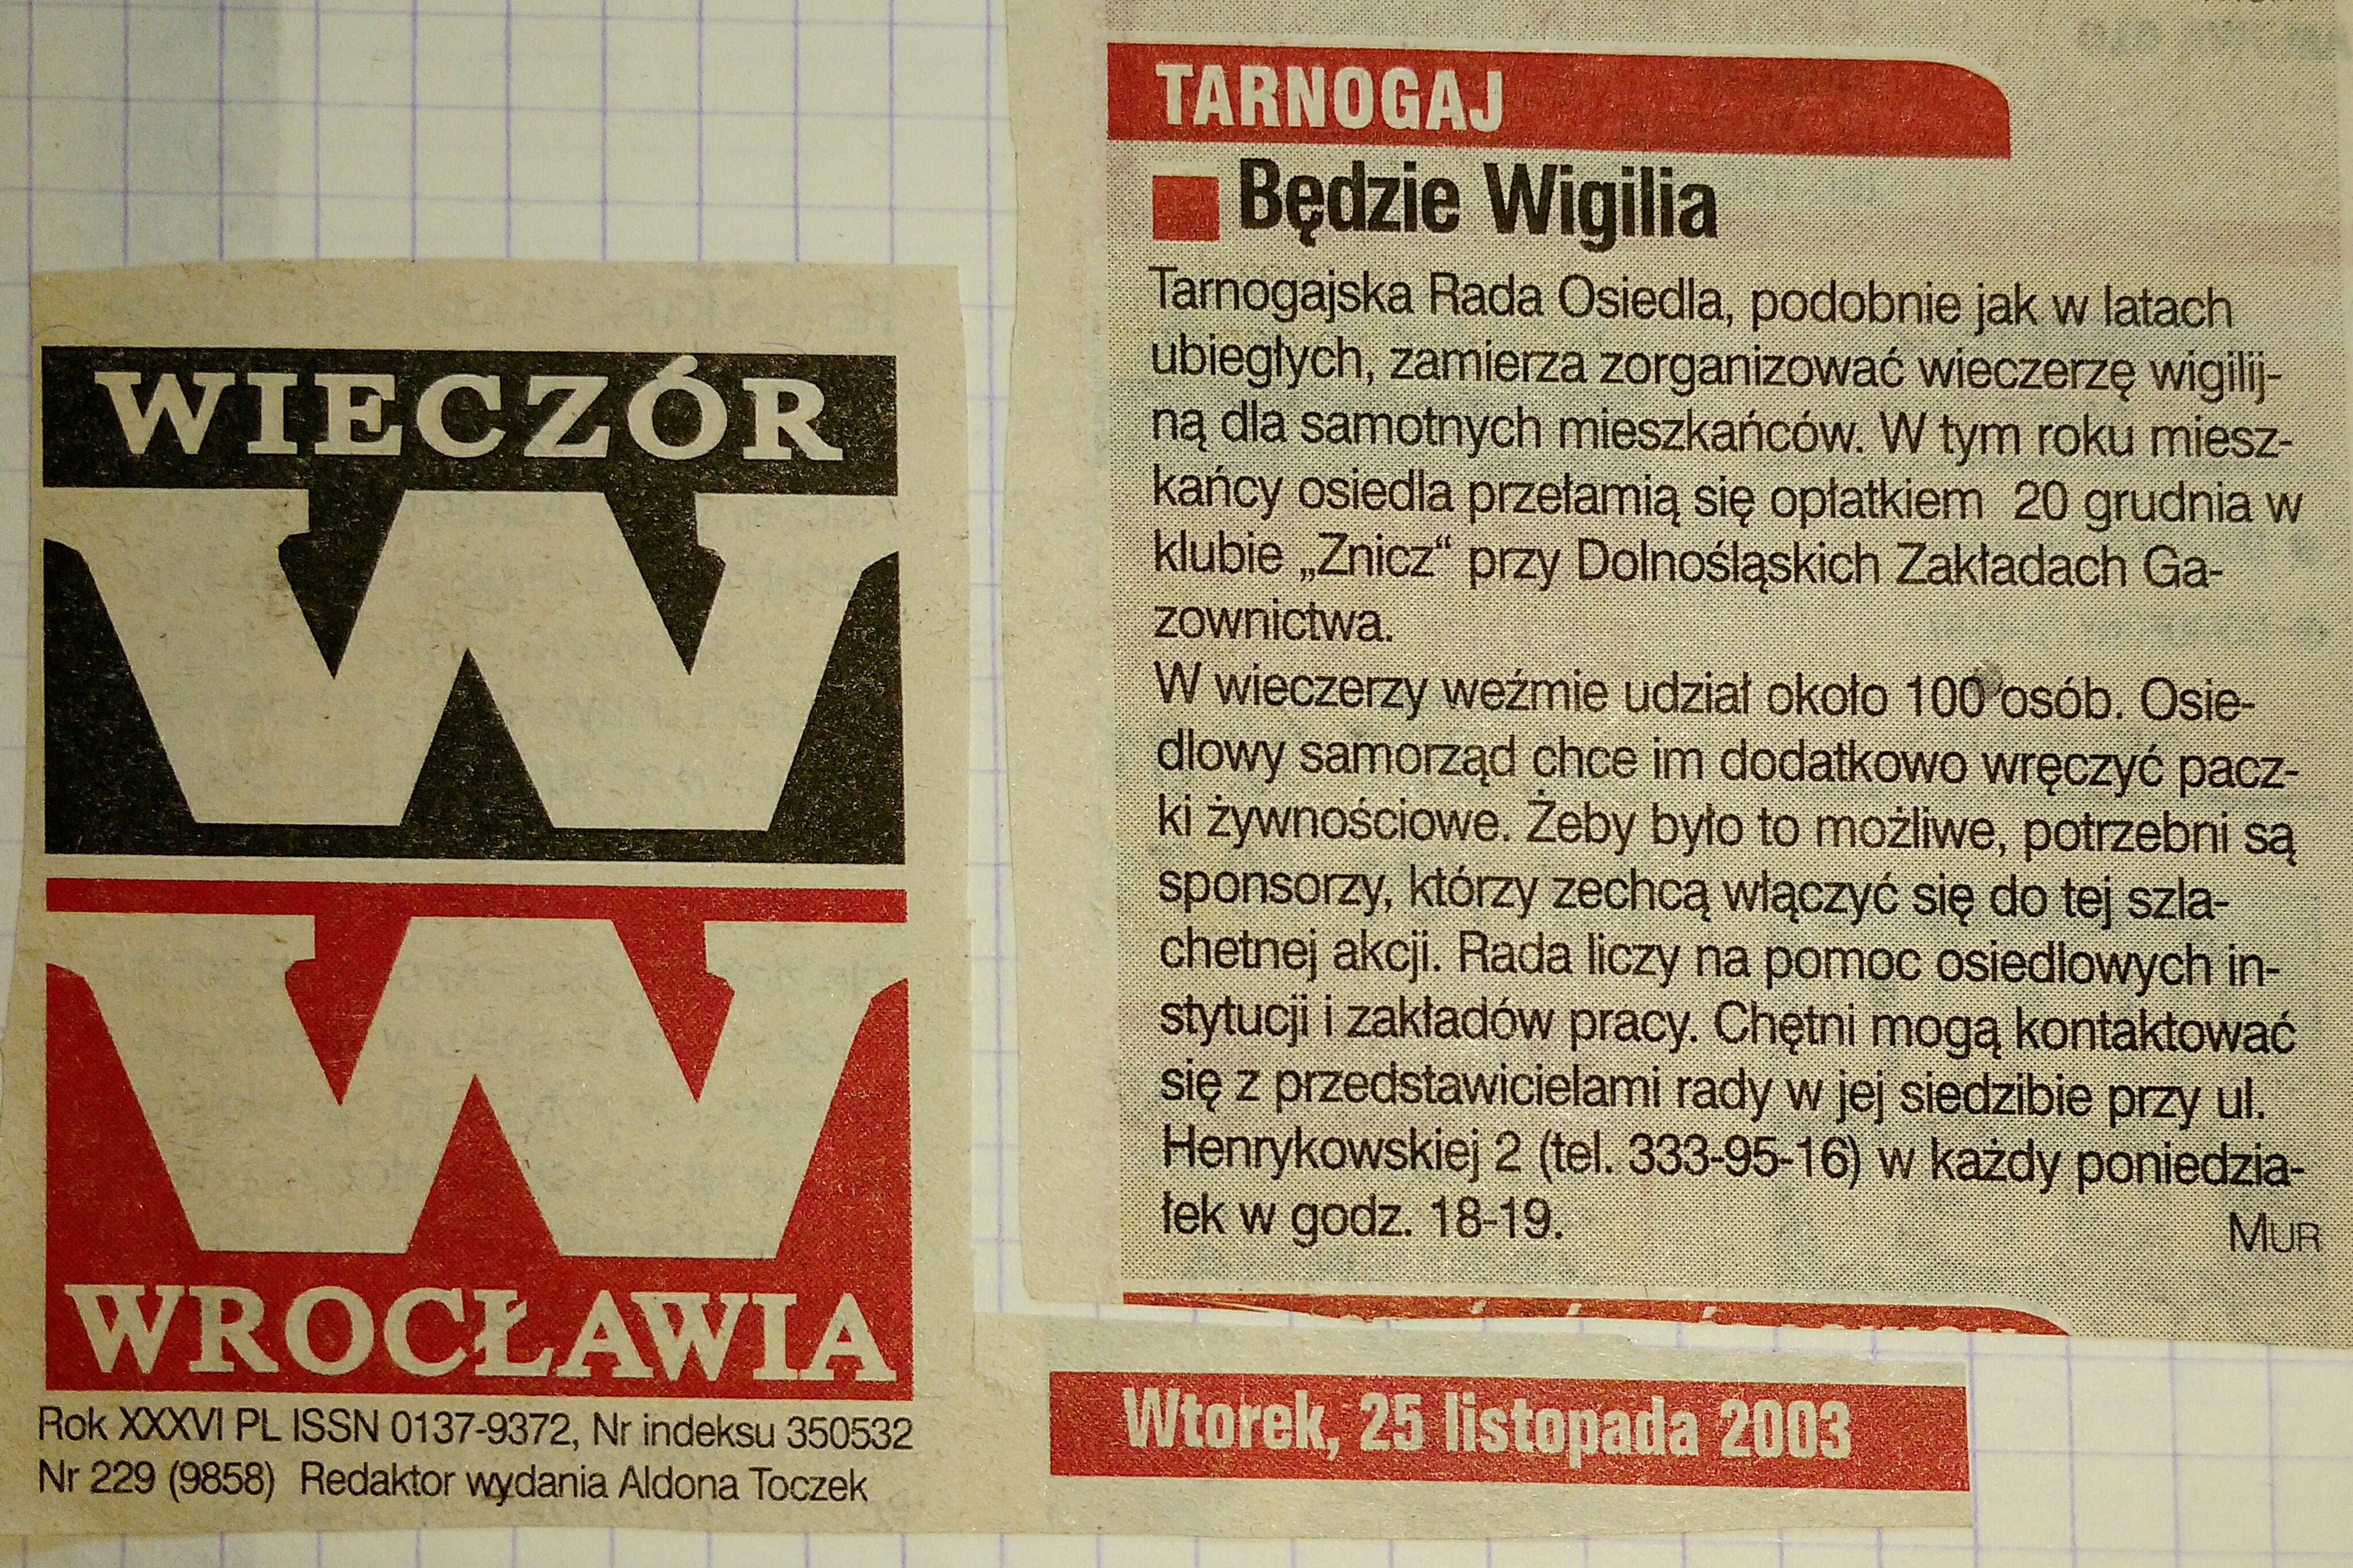 17 25 pazdziernika 2003 Wieczór Wrocławia